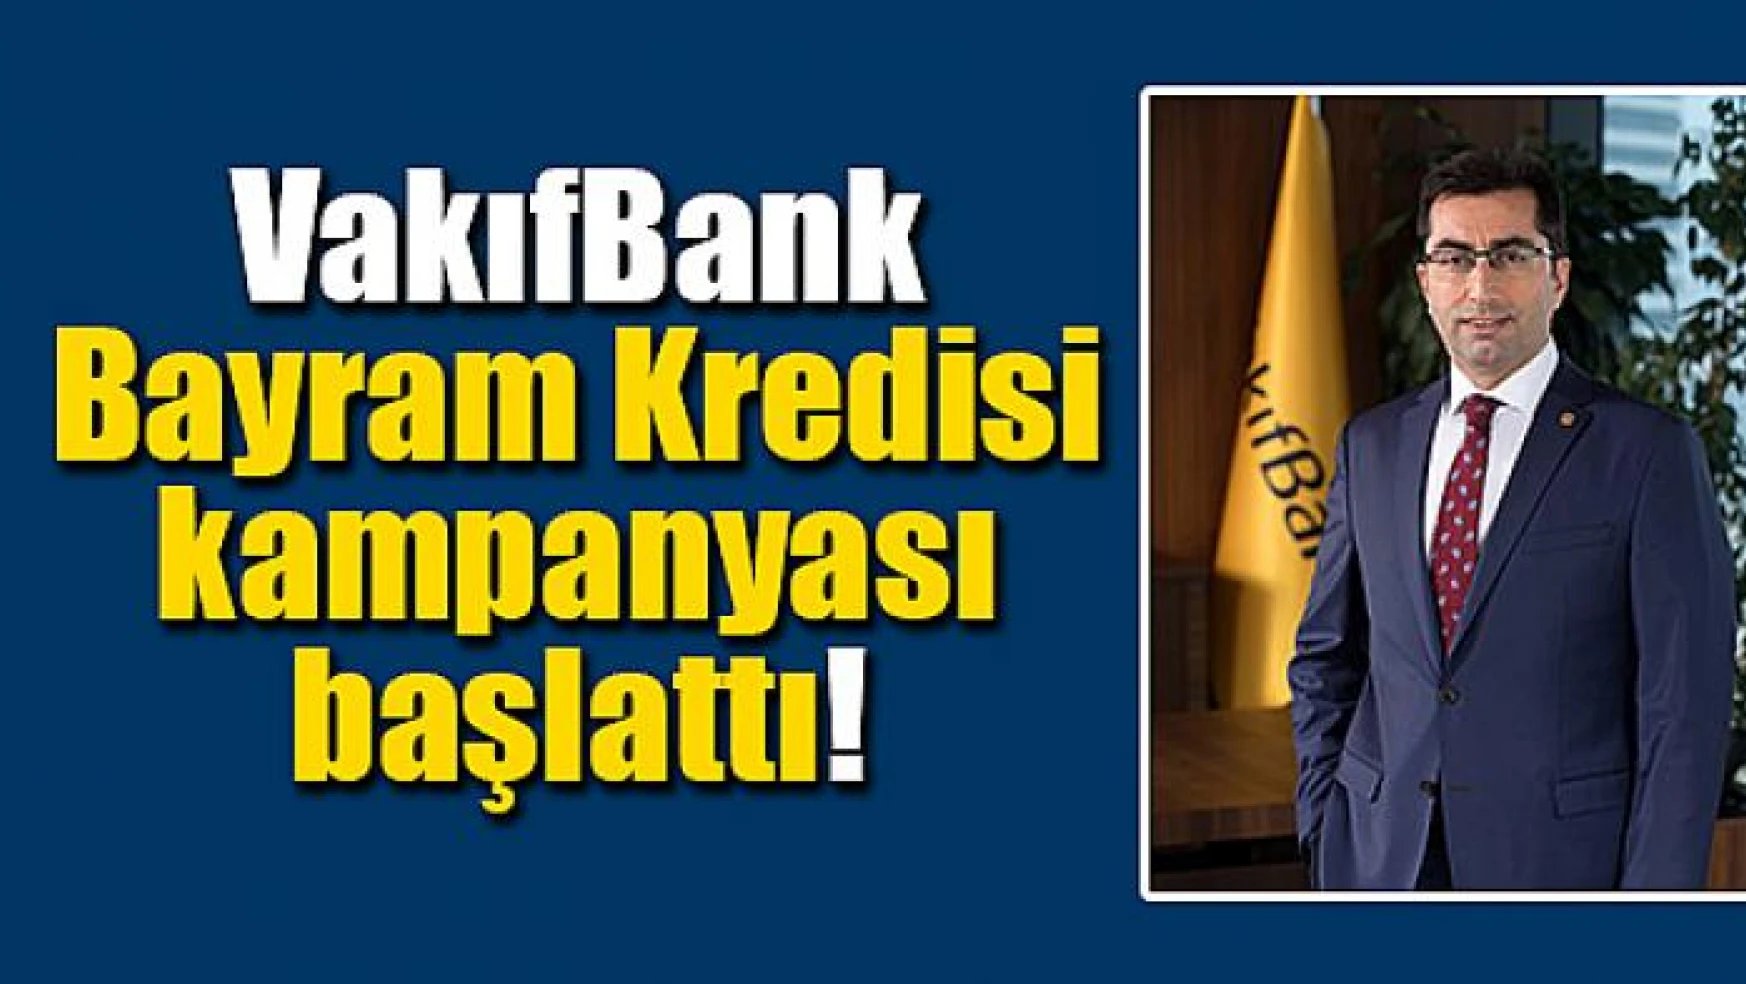 VakıfBank Bayram Kredisi kampanyası başlattı